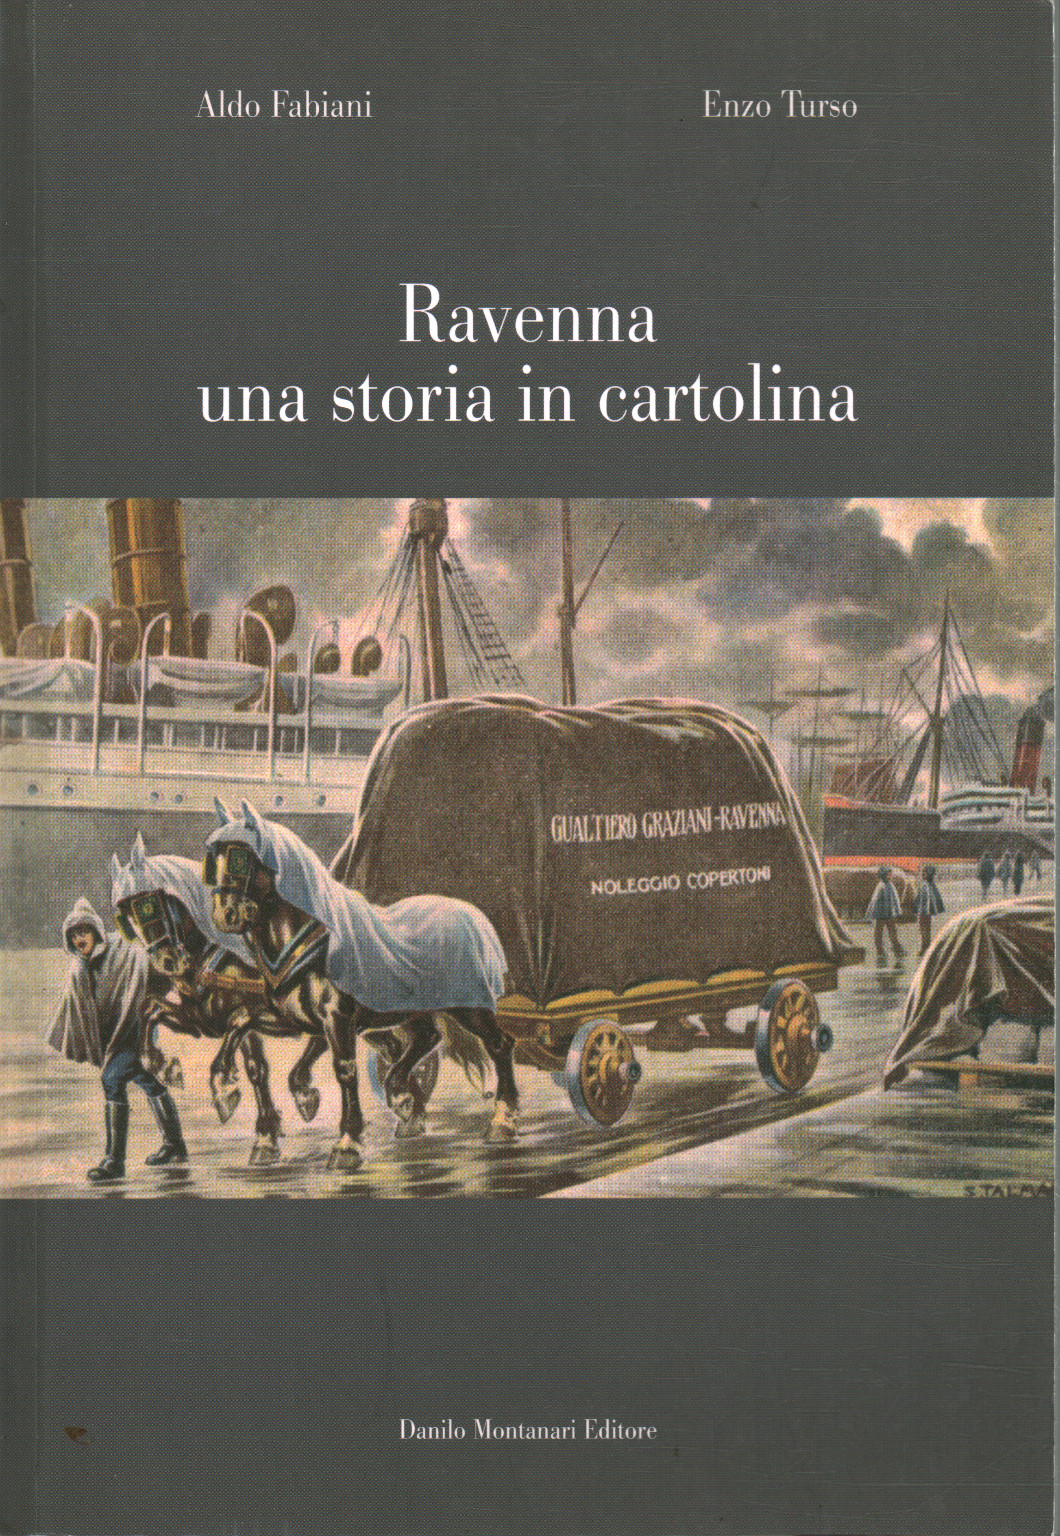 Ravenna una storia in cartolina, Aldo Fabiani Enzo Turso